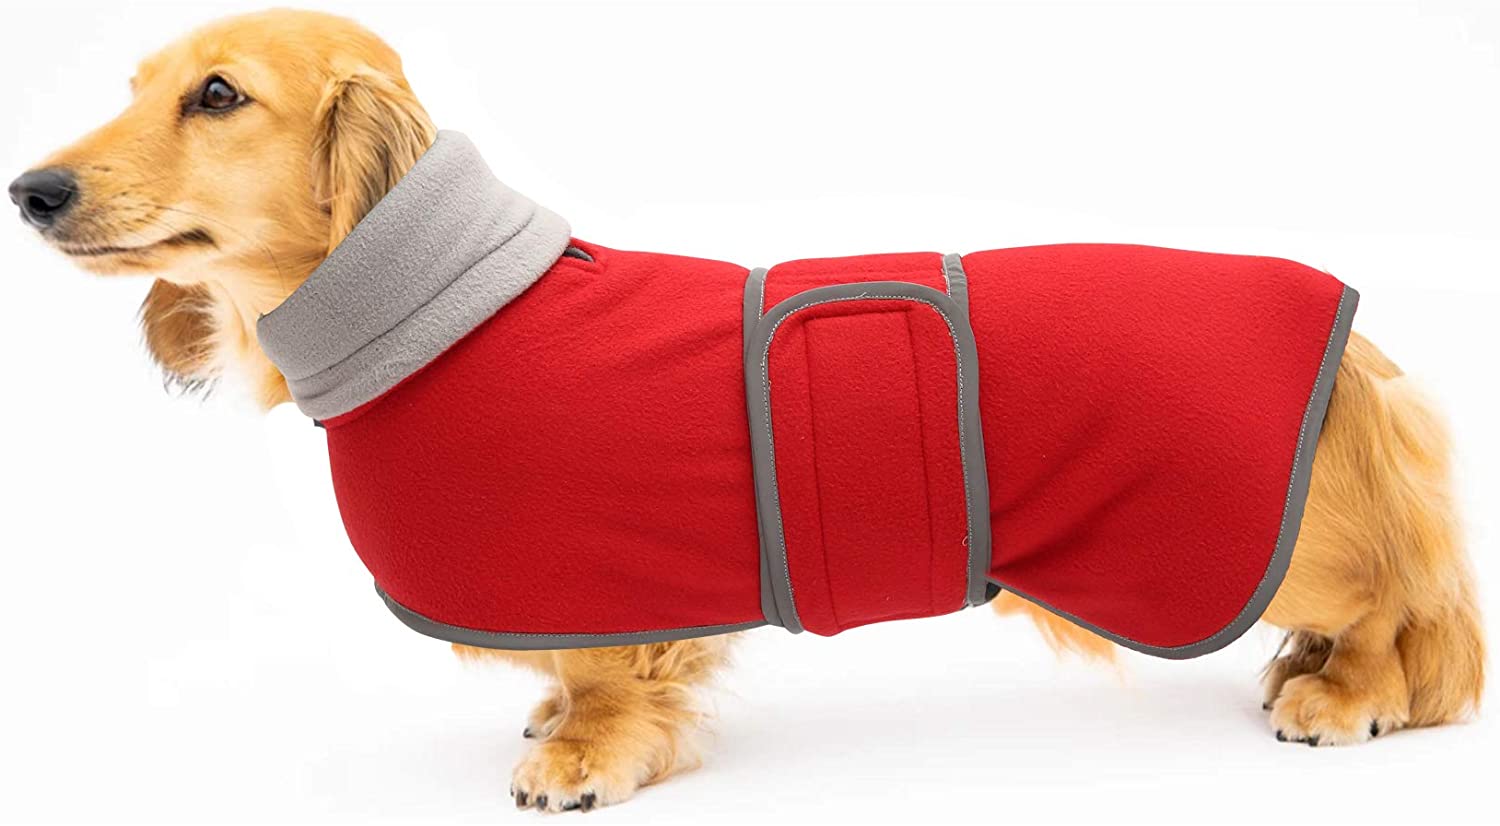  Geyecete Abrigo cálido acolchado térmico para perro salchicha con forro polar cálido, ropa para perro al aire libre con bandas ajustables para perros pequeños, medianos y grandes 